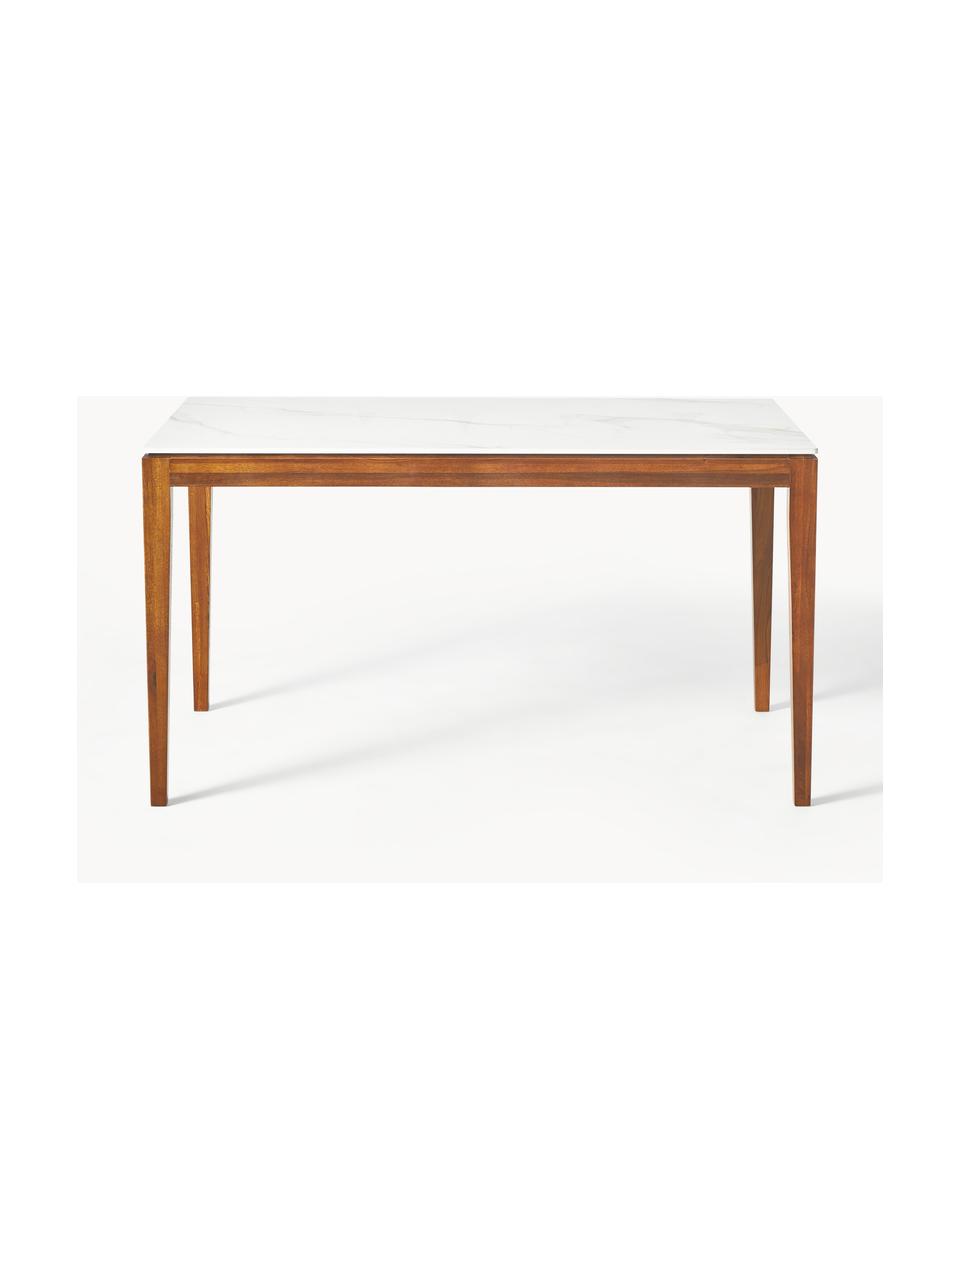 Jídelní stůl s deskou v mramorovém vzhledu Jackson, různé velikosti, Bílý mramorový vzhled, hnědě lakované dubové dřevo, Š 140 cm, H 90 cm